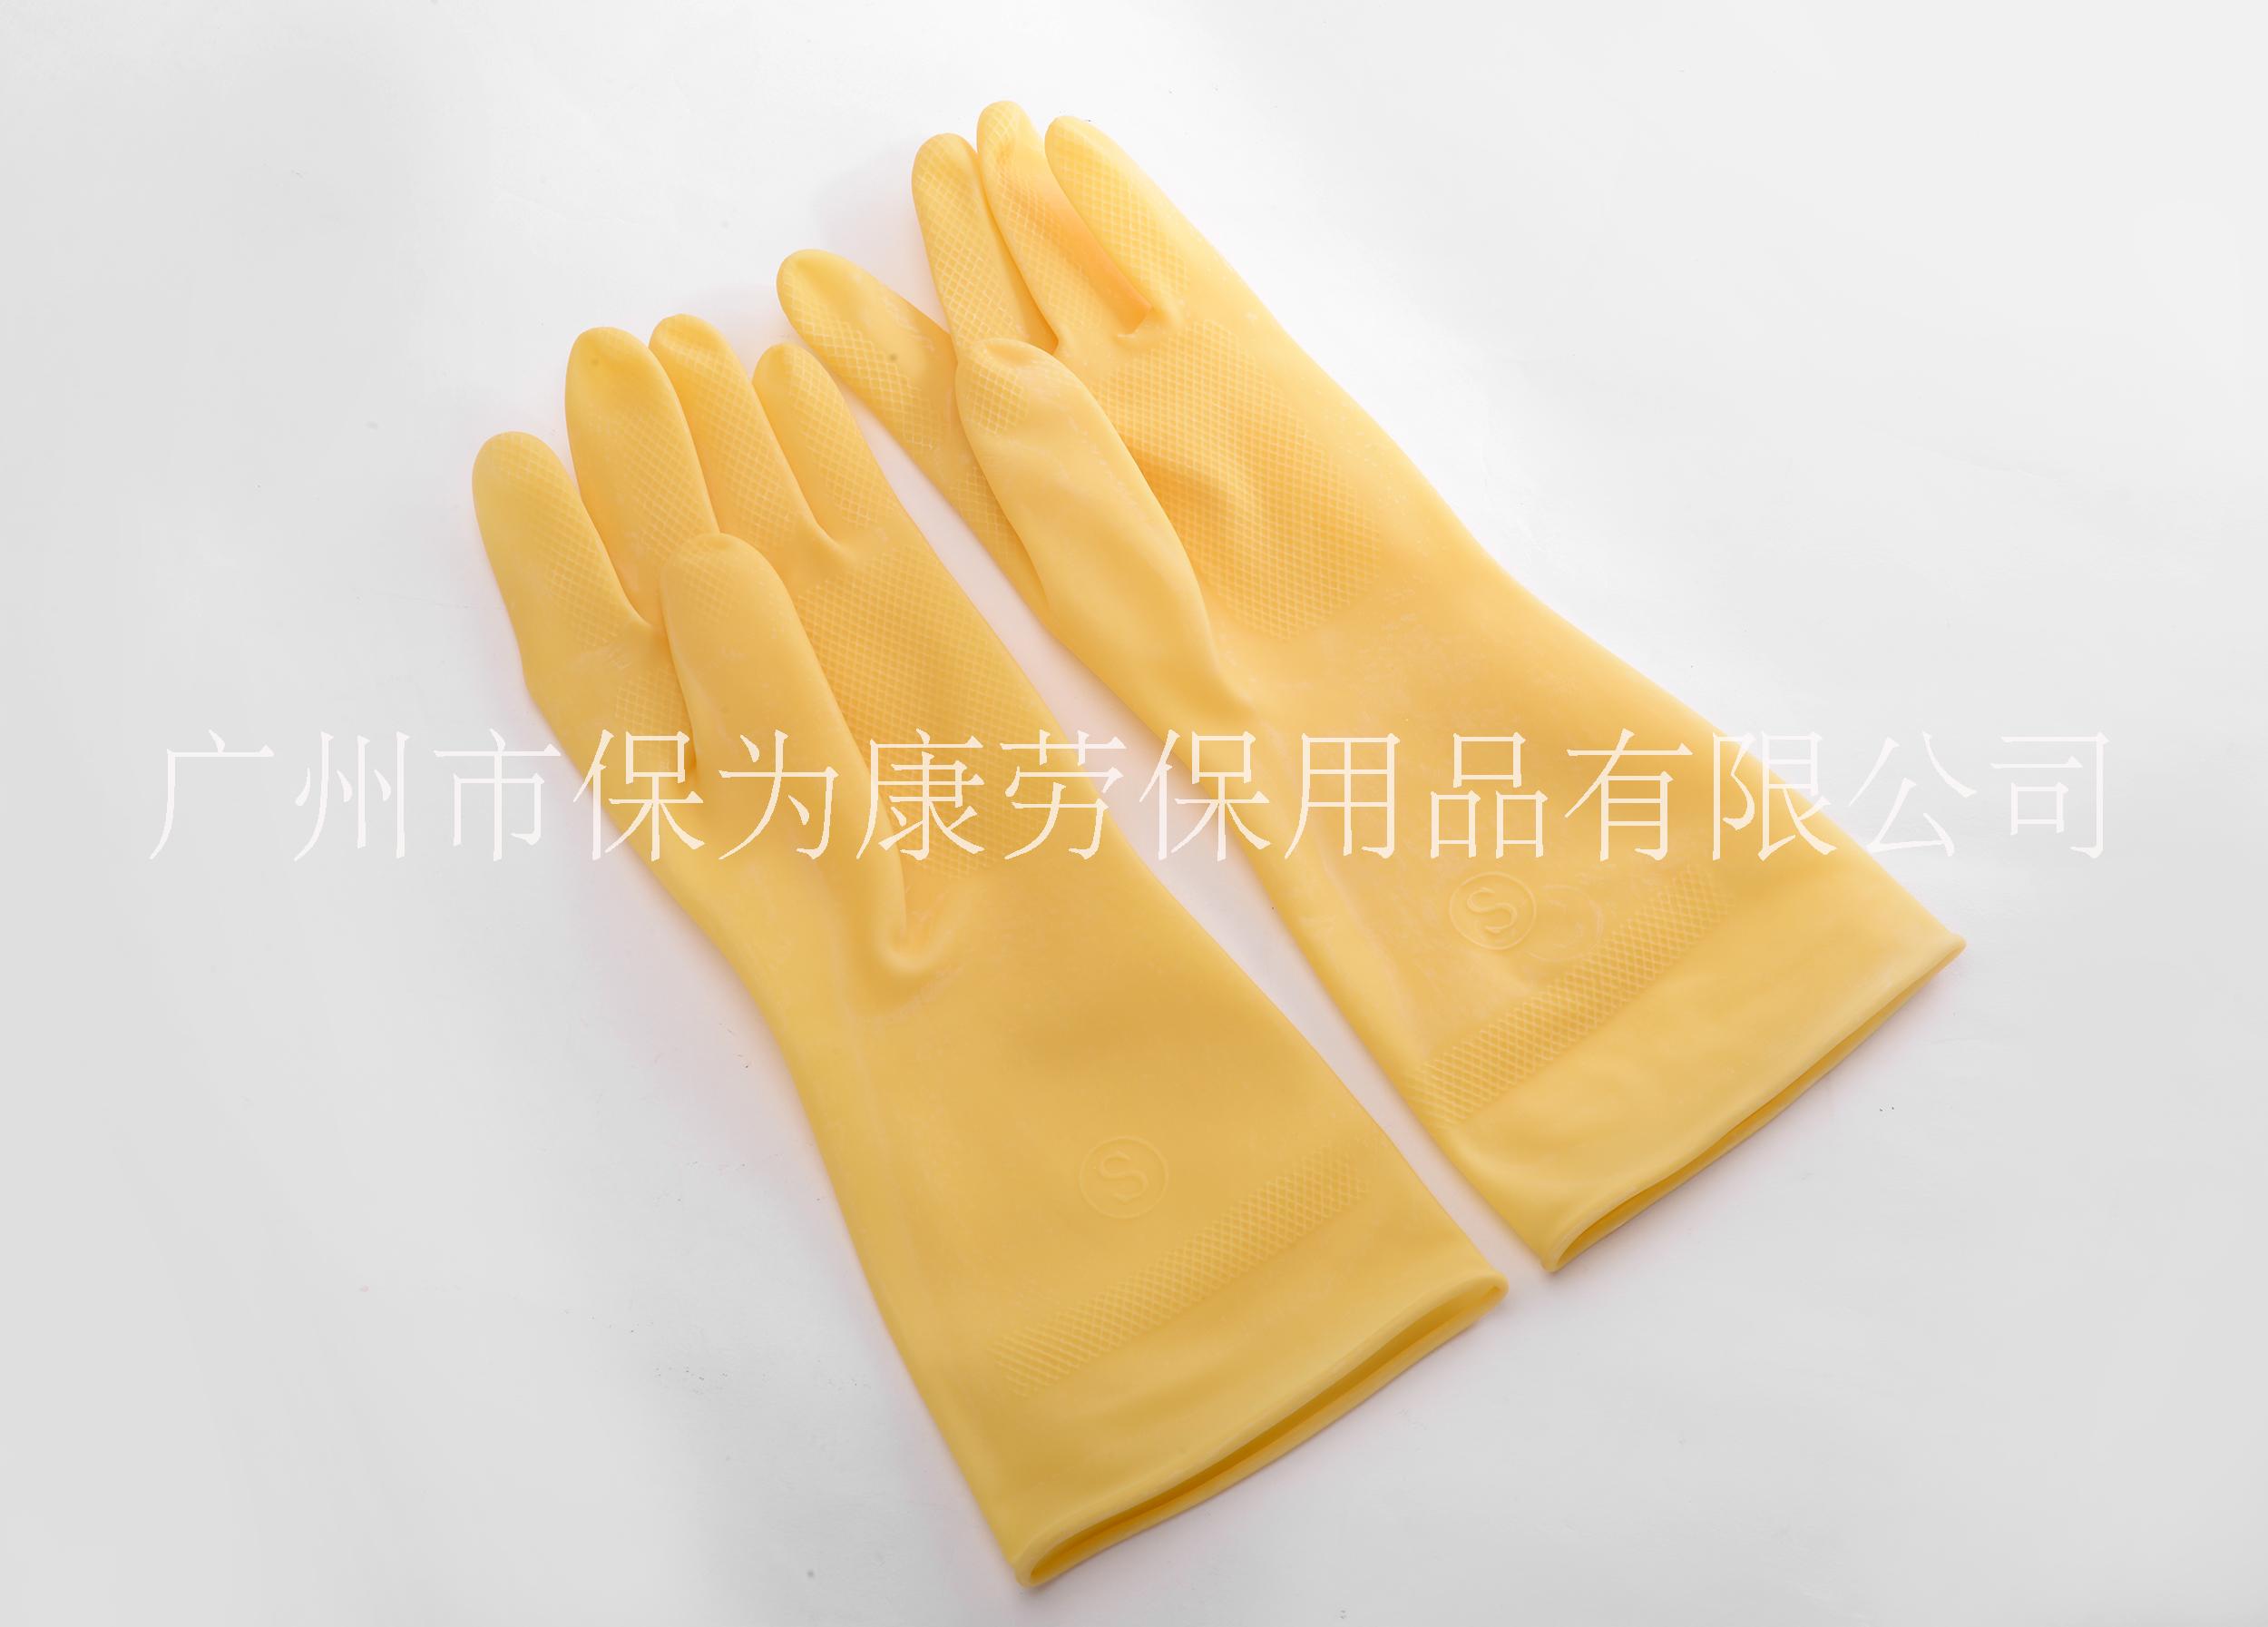 厂家直销保为康加厚乳胶防酸碱抗毒防污家用清洁工业用手套批发k001 k001乳胶手套图片